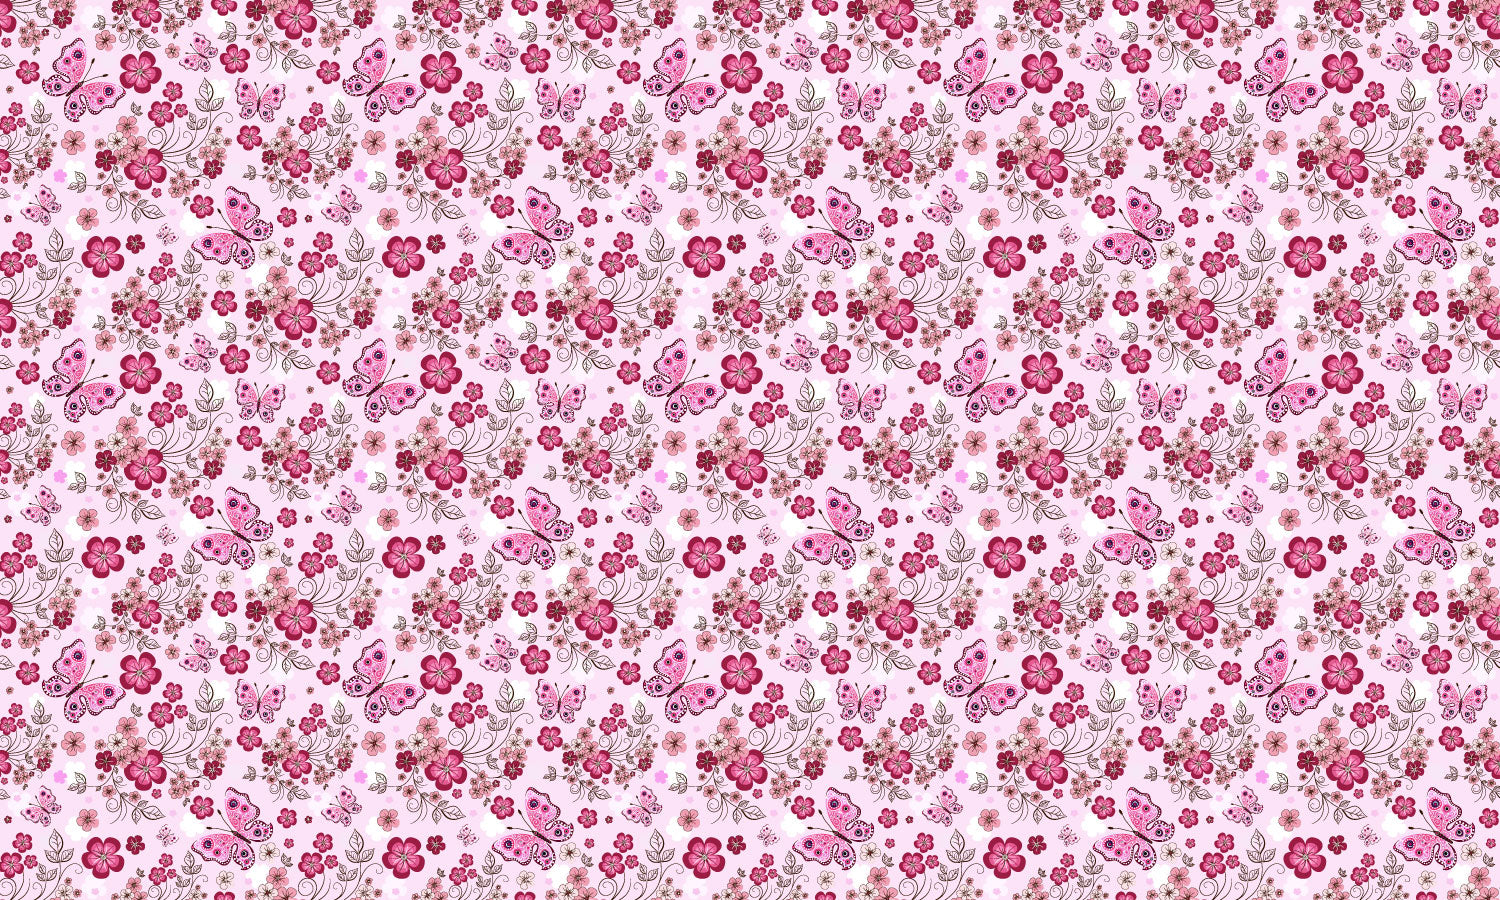 Kuhinjski paneli Pink seamless floral pattern - Pleksi steklo - s tiskom za kuhinjo, Stenske obloge PKU0353